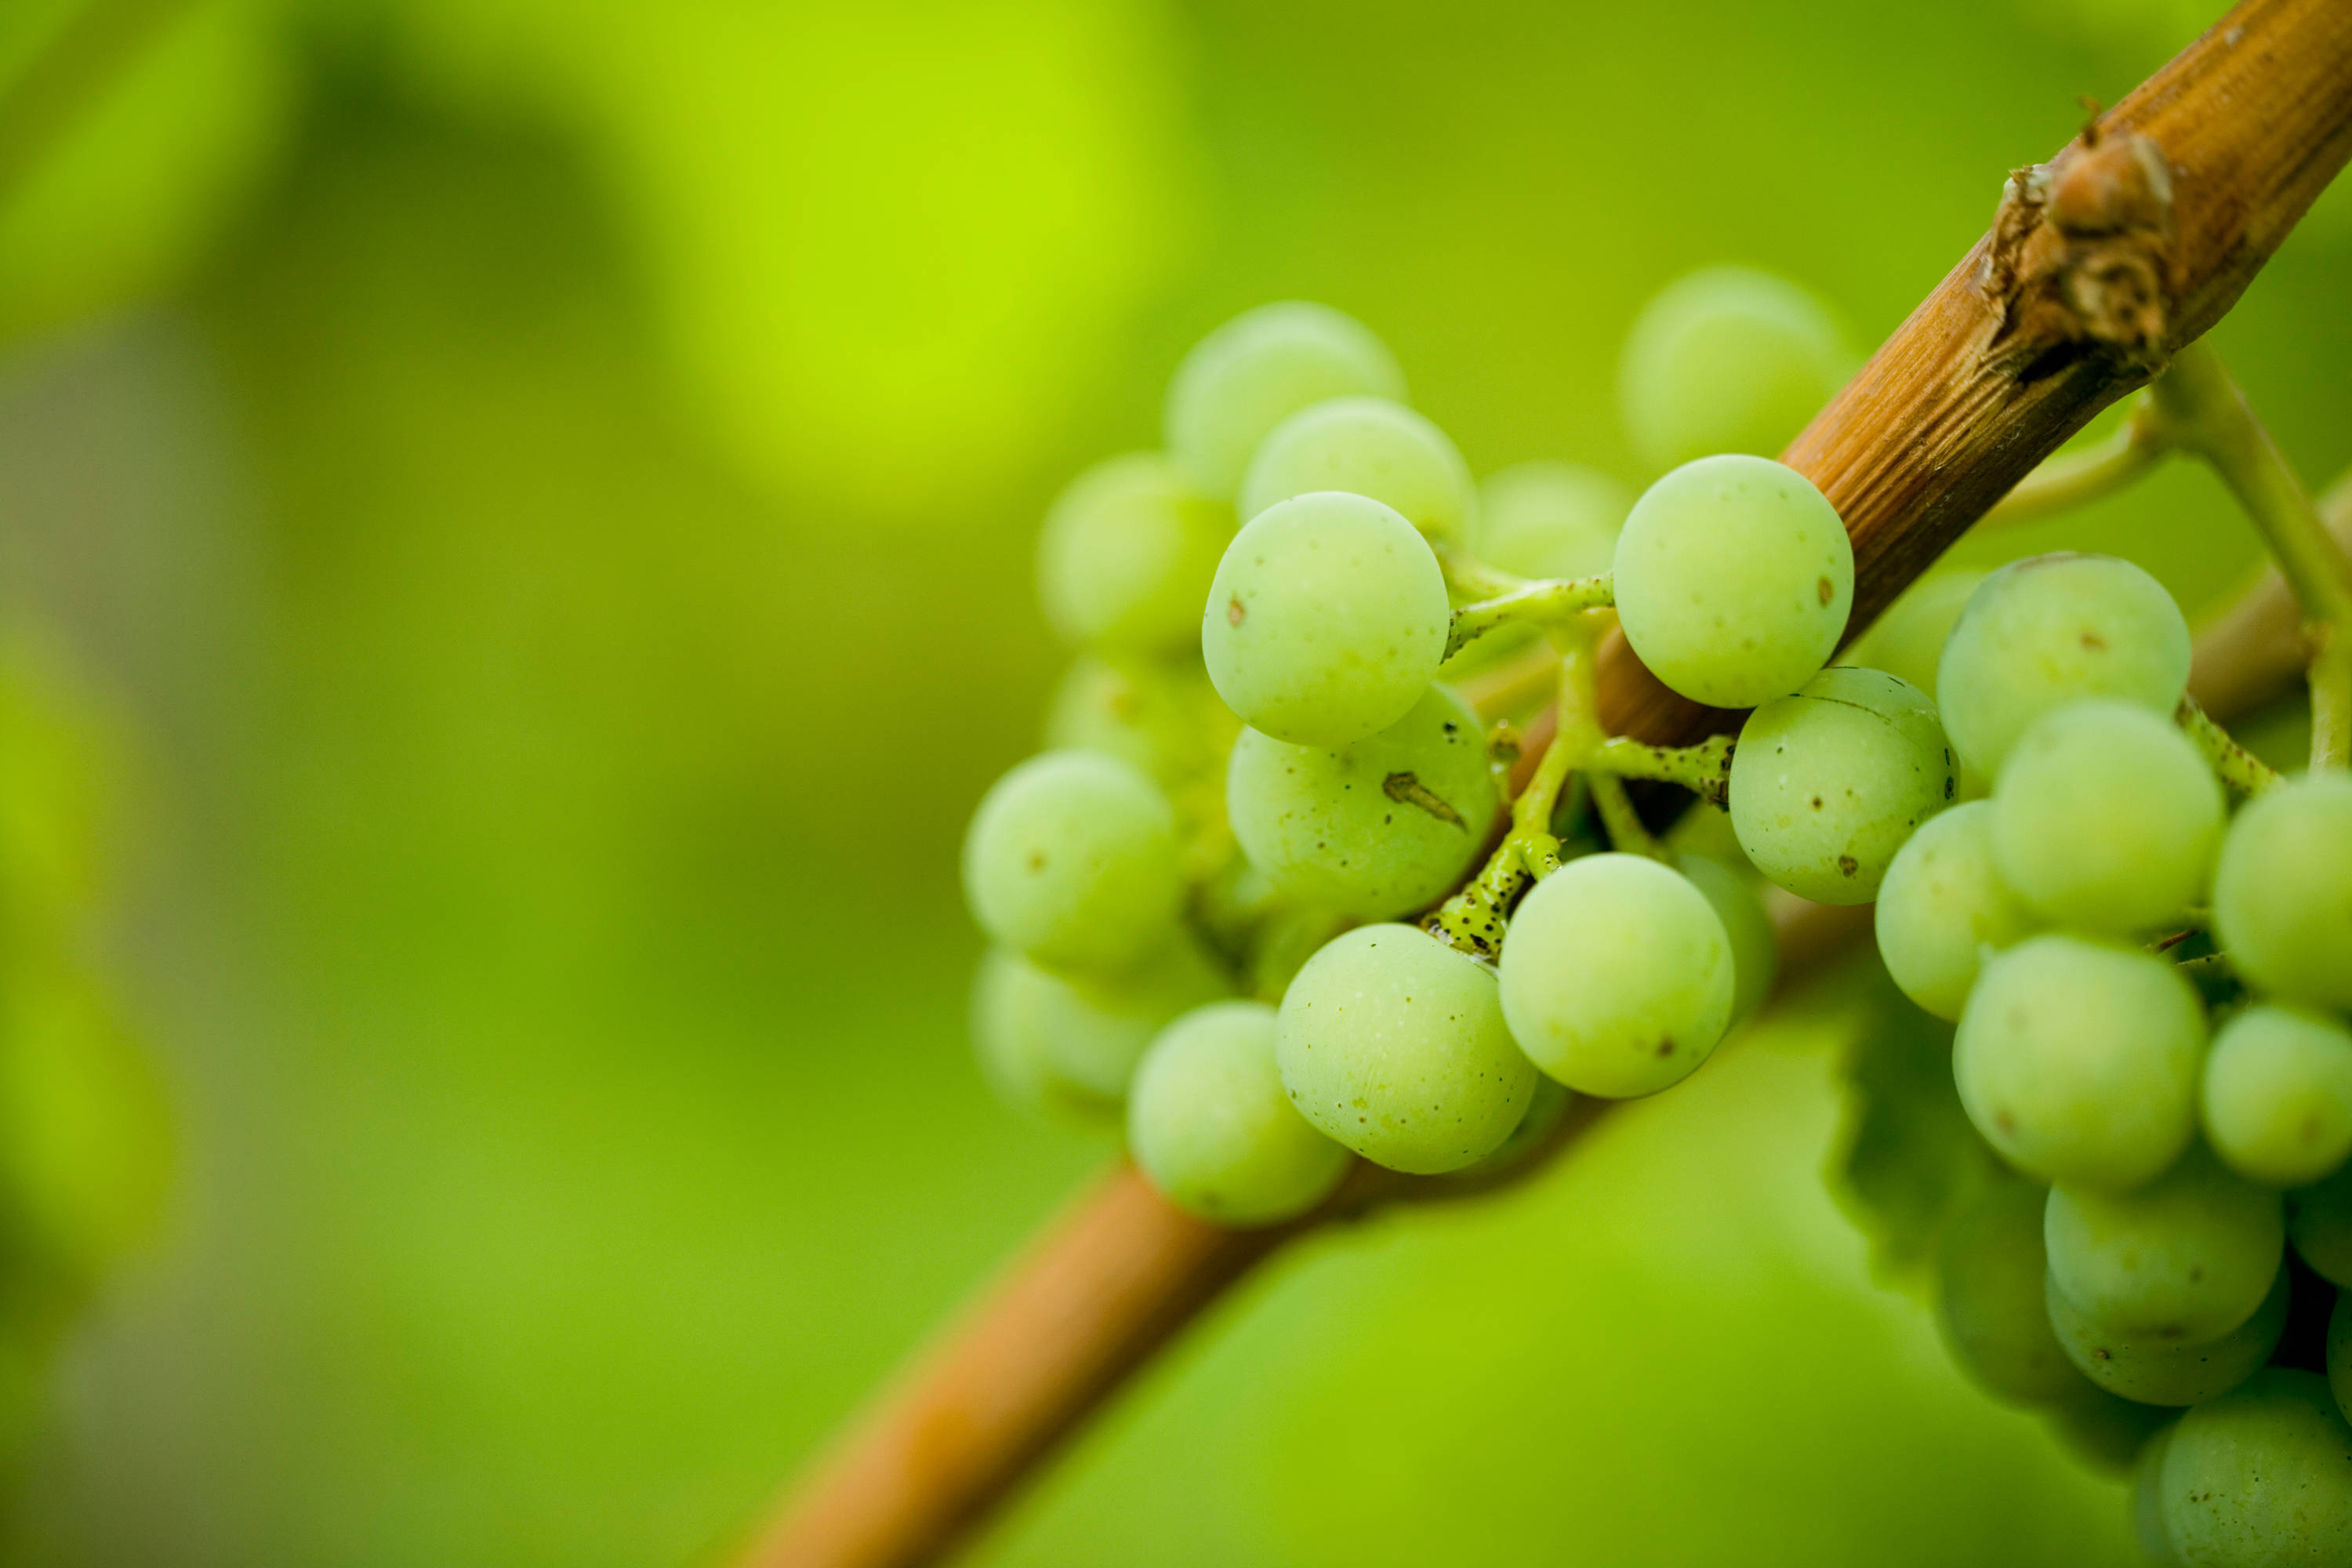 Close-up of green grapes at a vineyard.